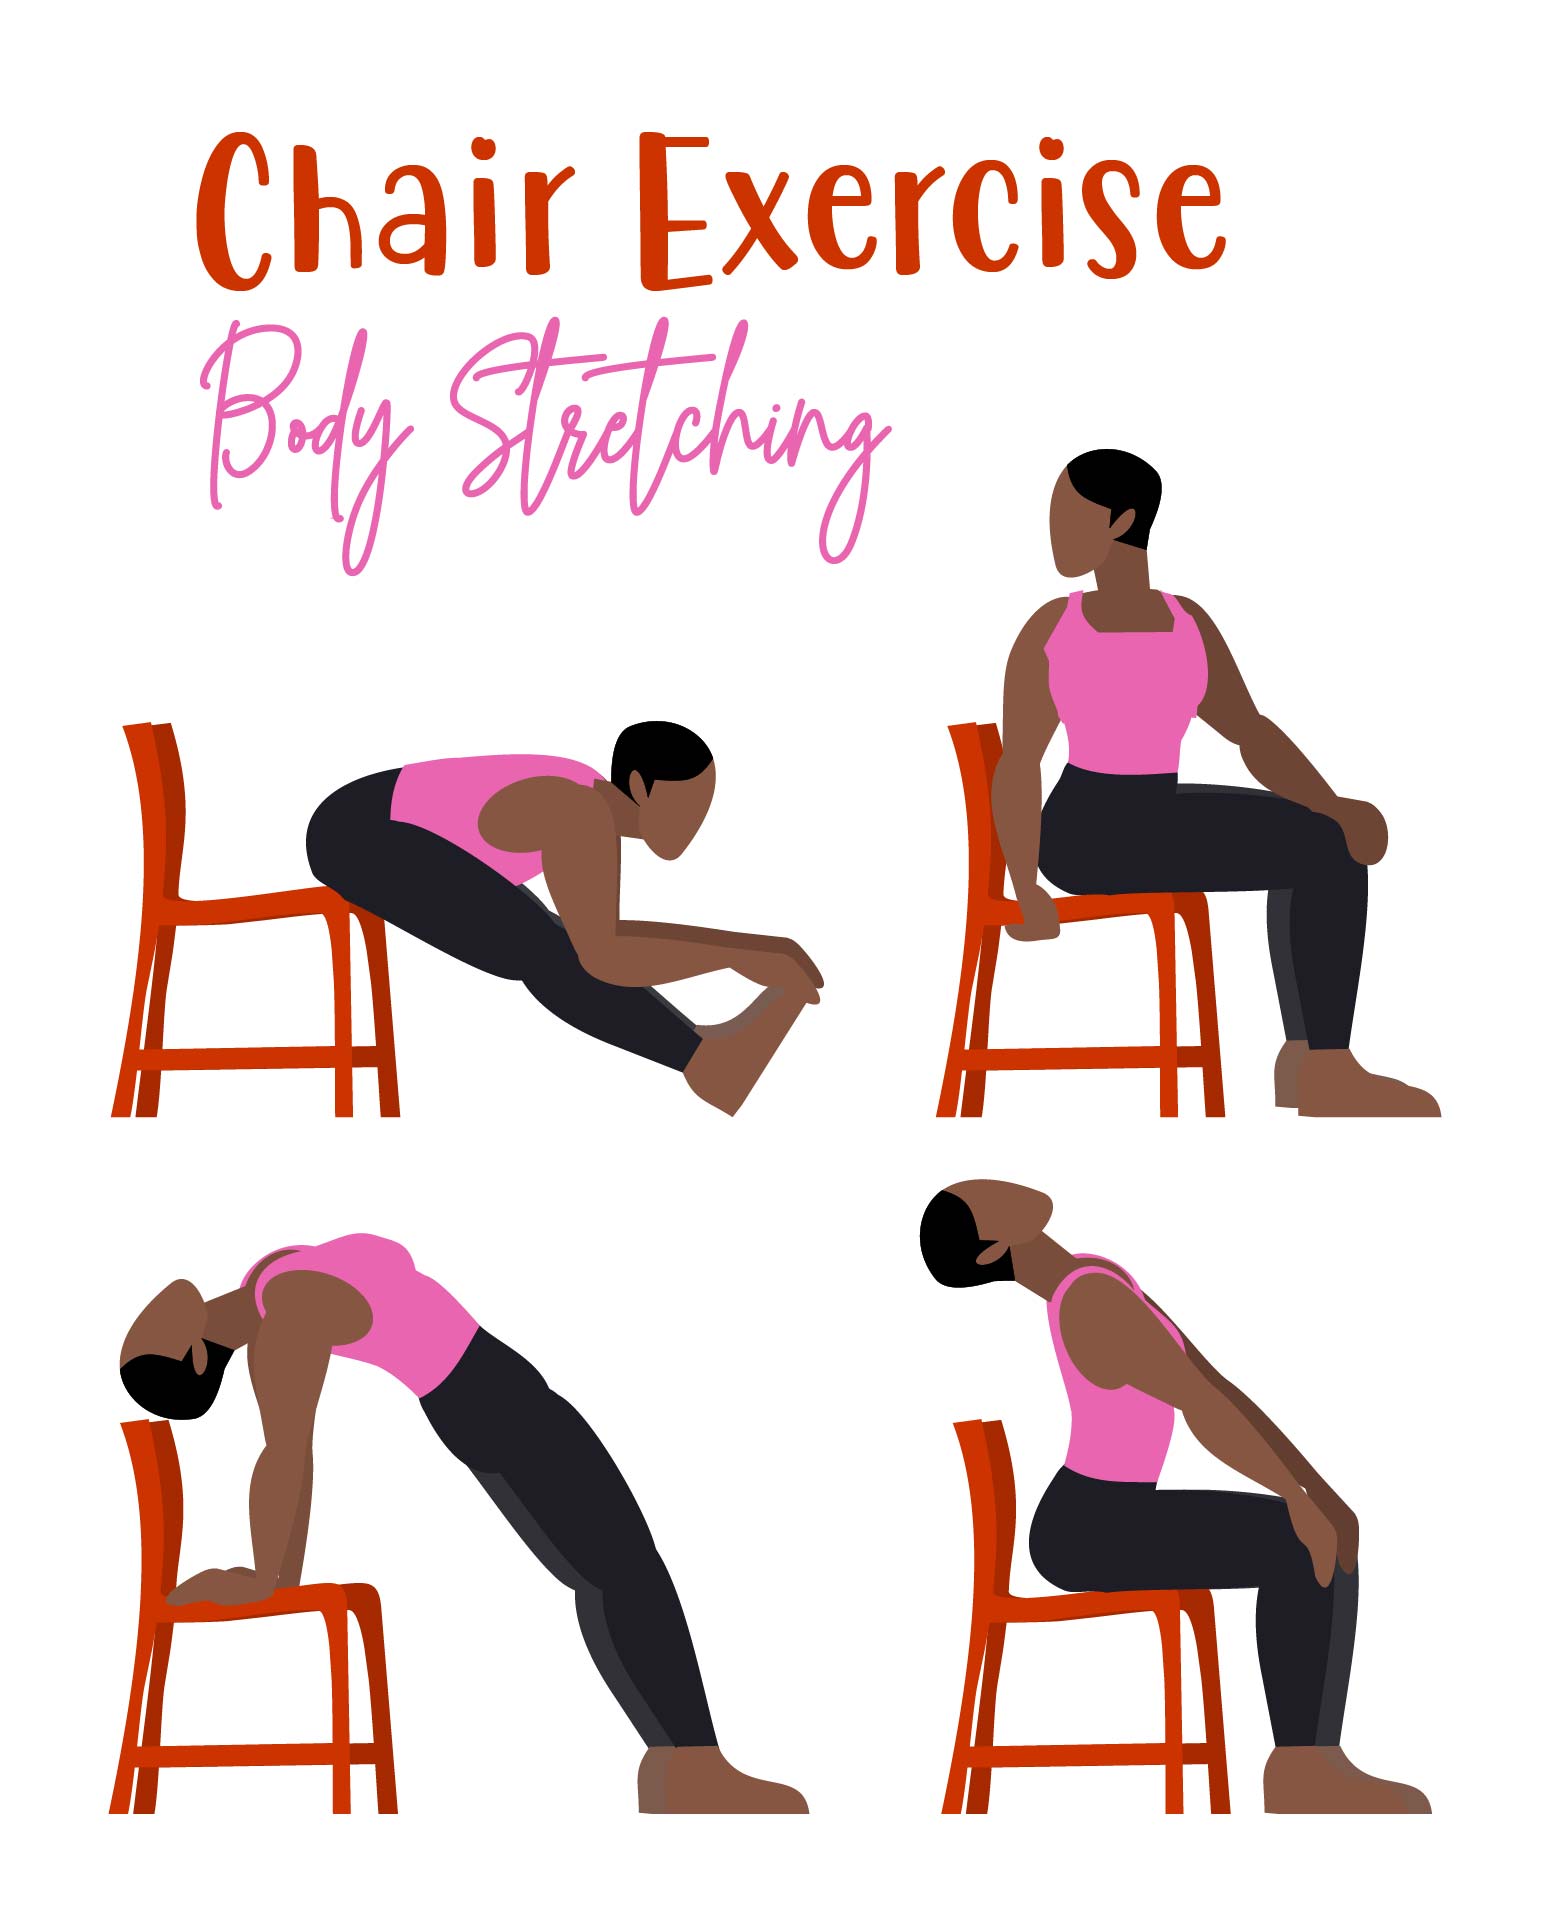 Whole Body Stretching Exercises